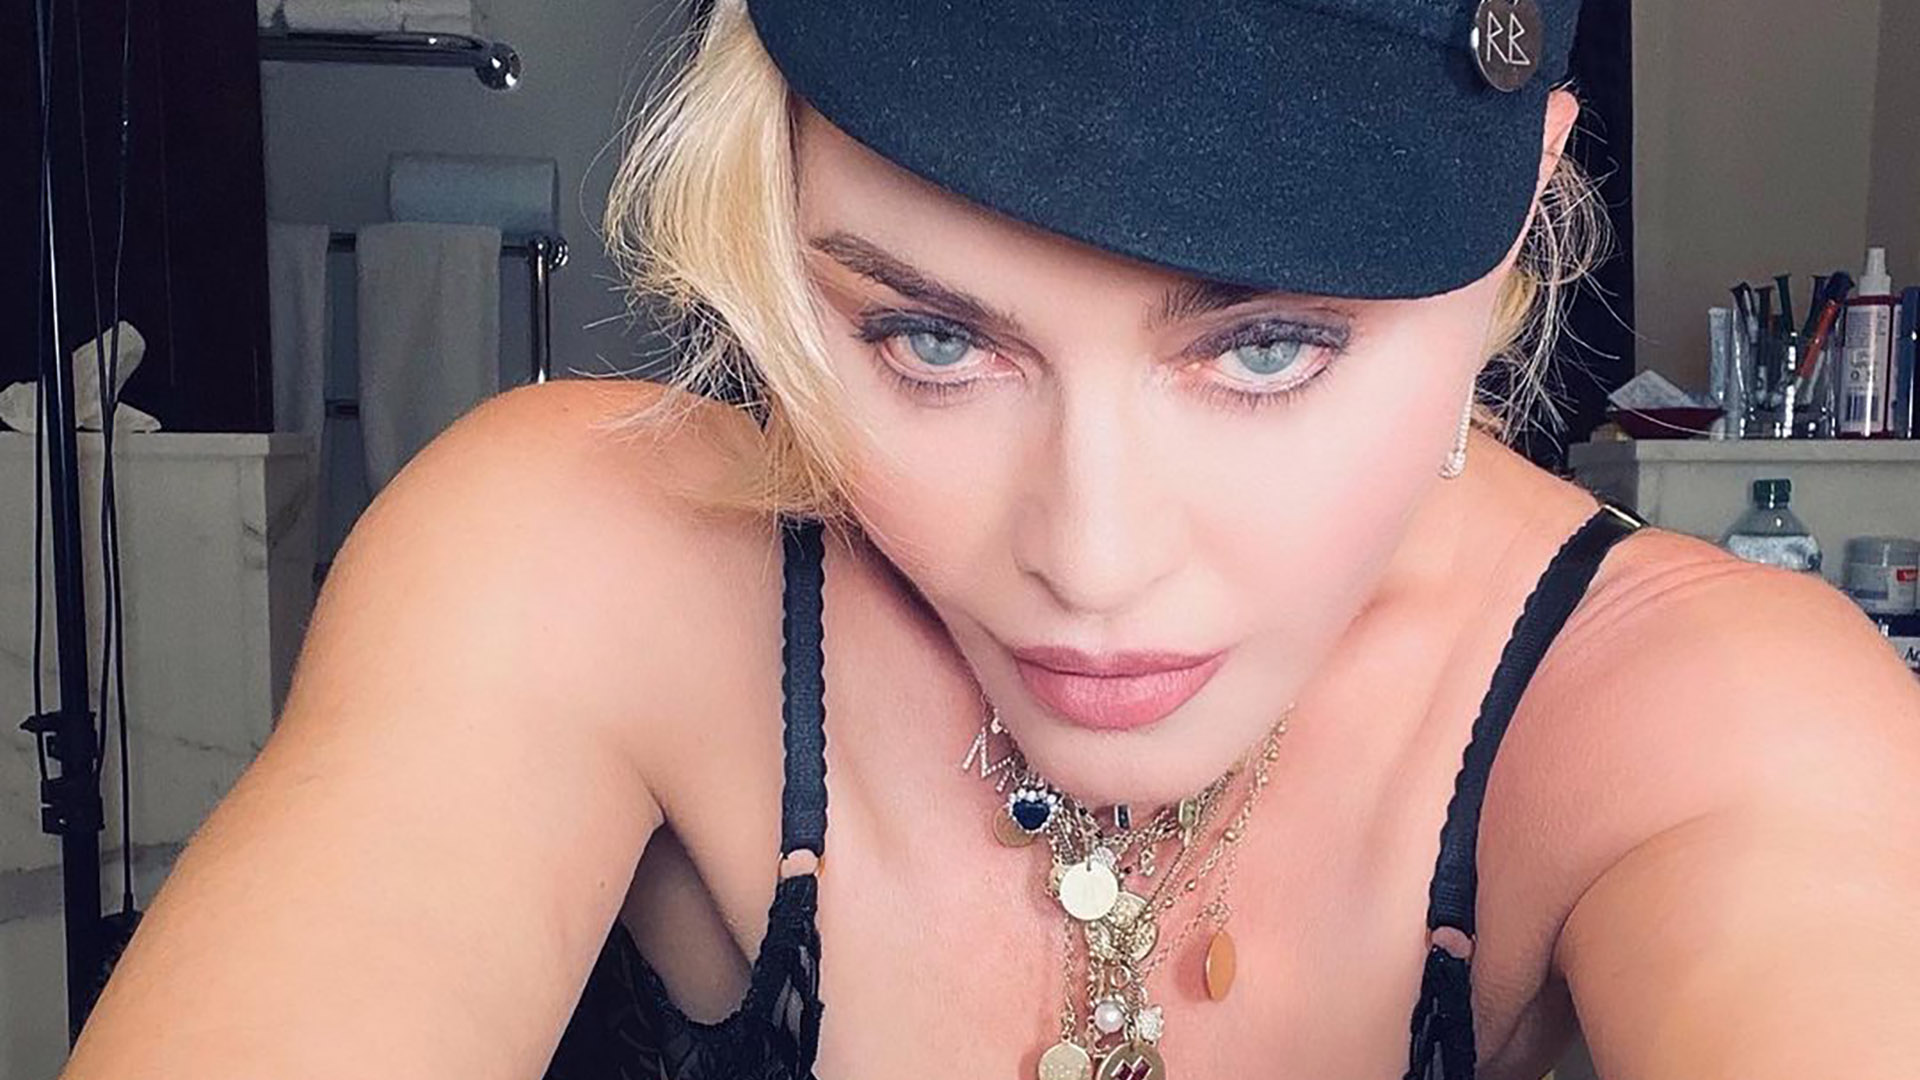 Madonna compartió fotos íntimas en Instagram - Infobae